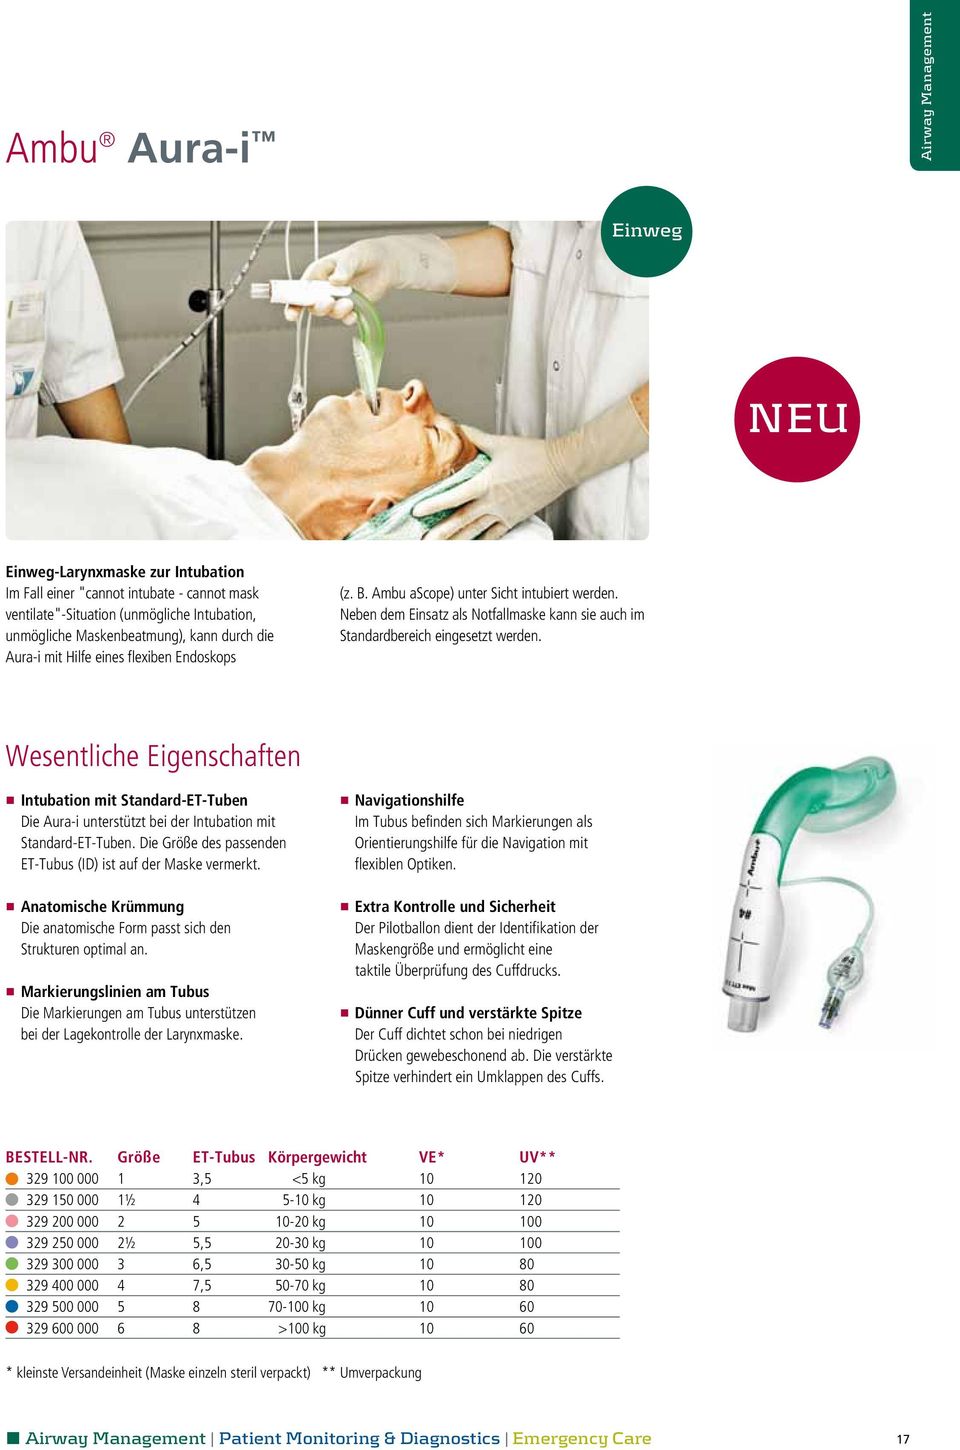 Wesentliche Eigenschaften n Intubation mit Standard-ET-Tuben Die Aura-i unterstützt bei der Intubation mit Standard-ET-Tuben. Die Größe des passenden ET-Tubus (ID) ist auf der Maske vermerkt.